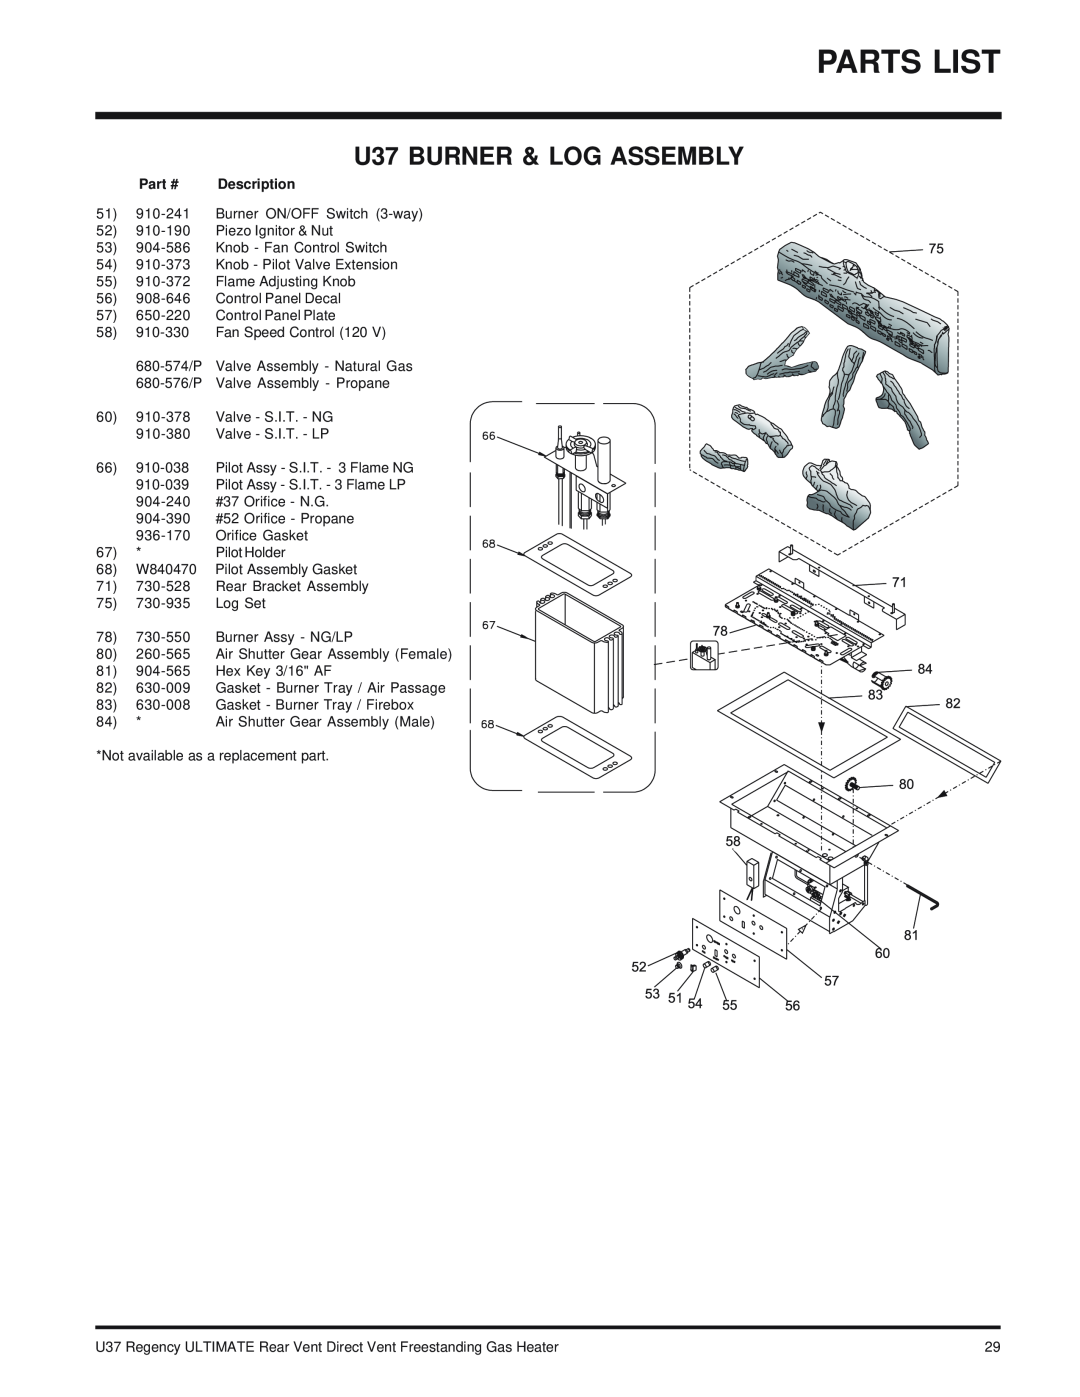 Regency U37-NG NATURAL GAS, U37-LP PROPANE installation manual Parts List, U37 BURNER & LOG ASSEMBLY 